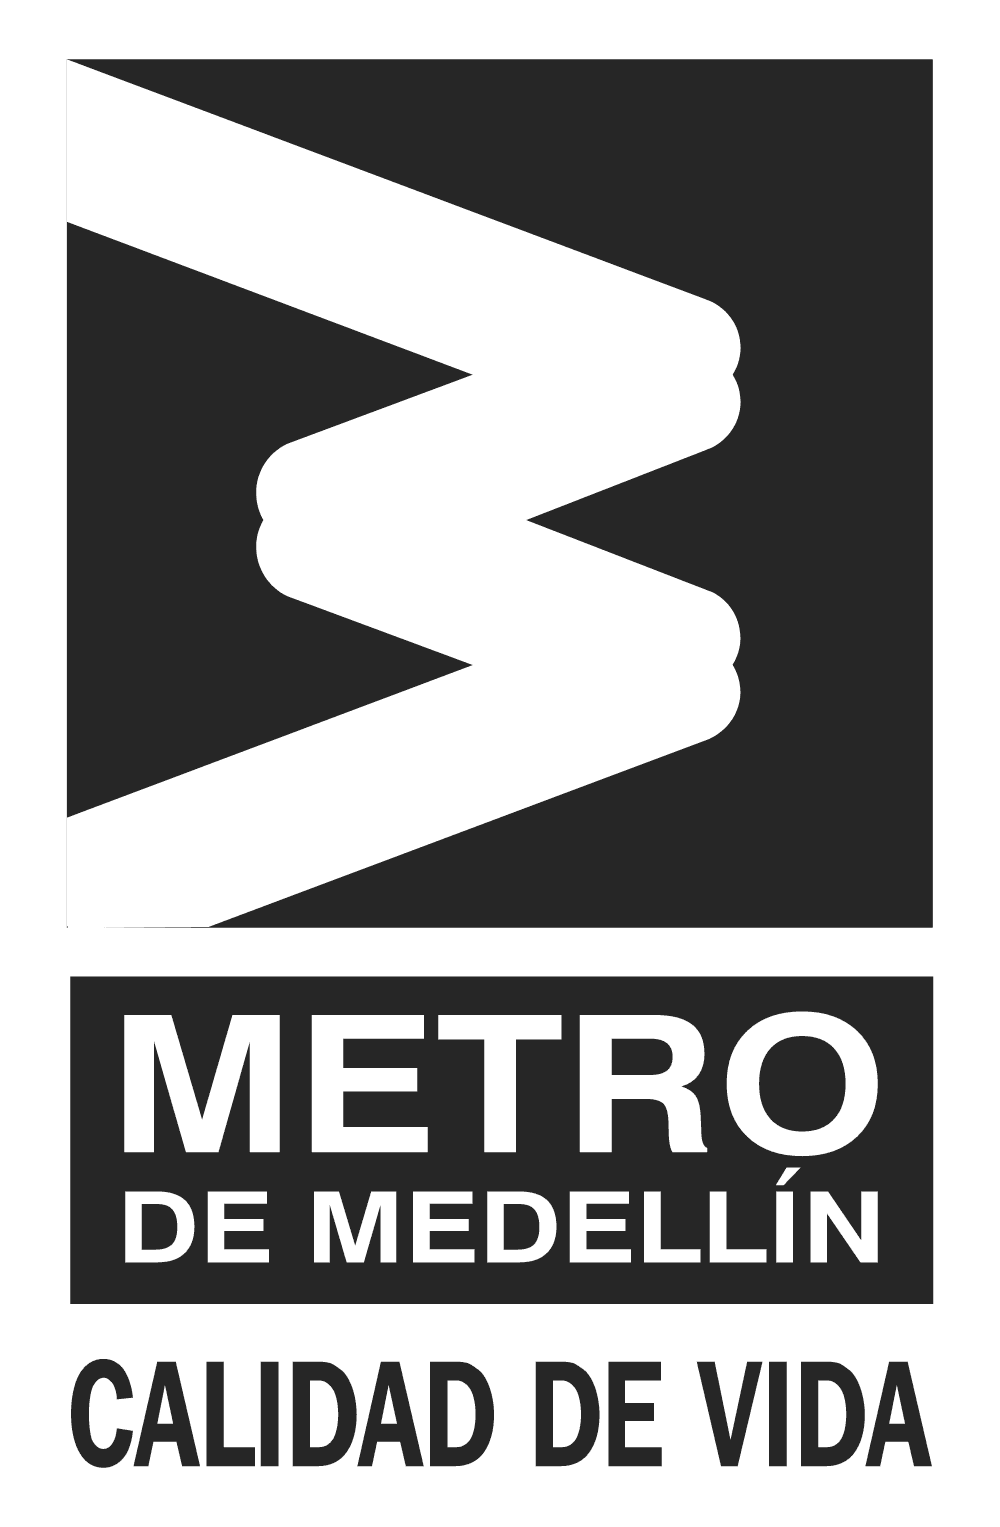 Metro de Medellin Logo download